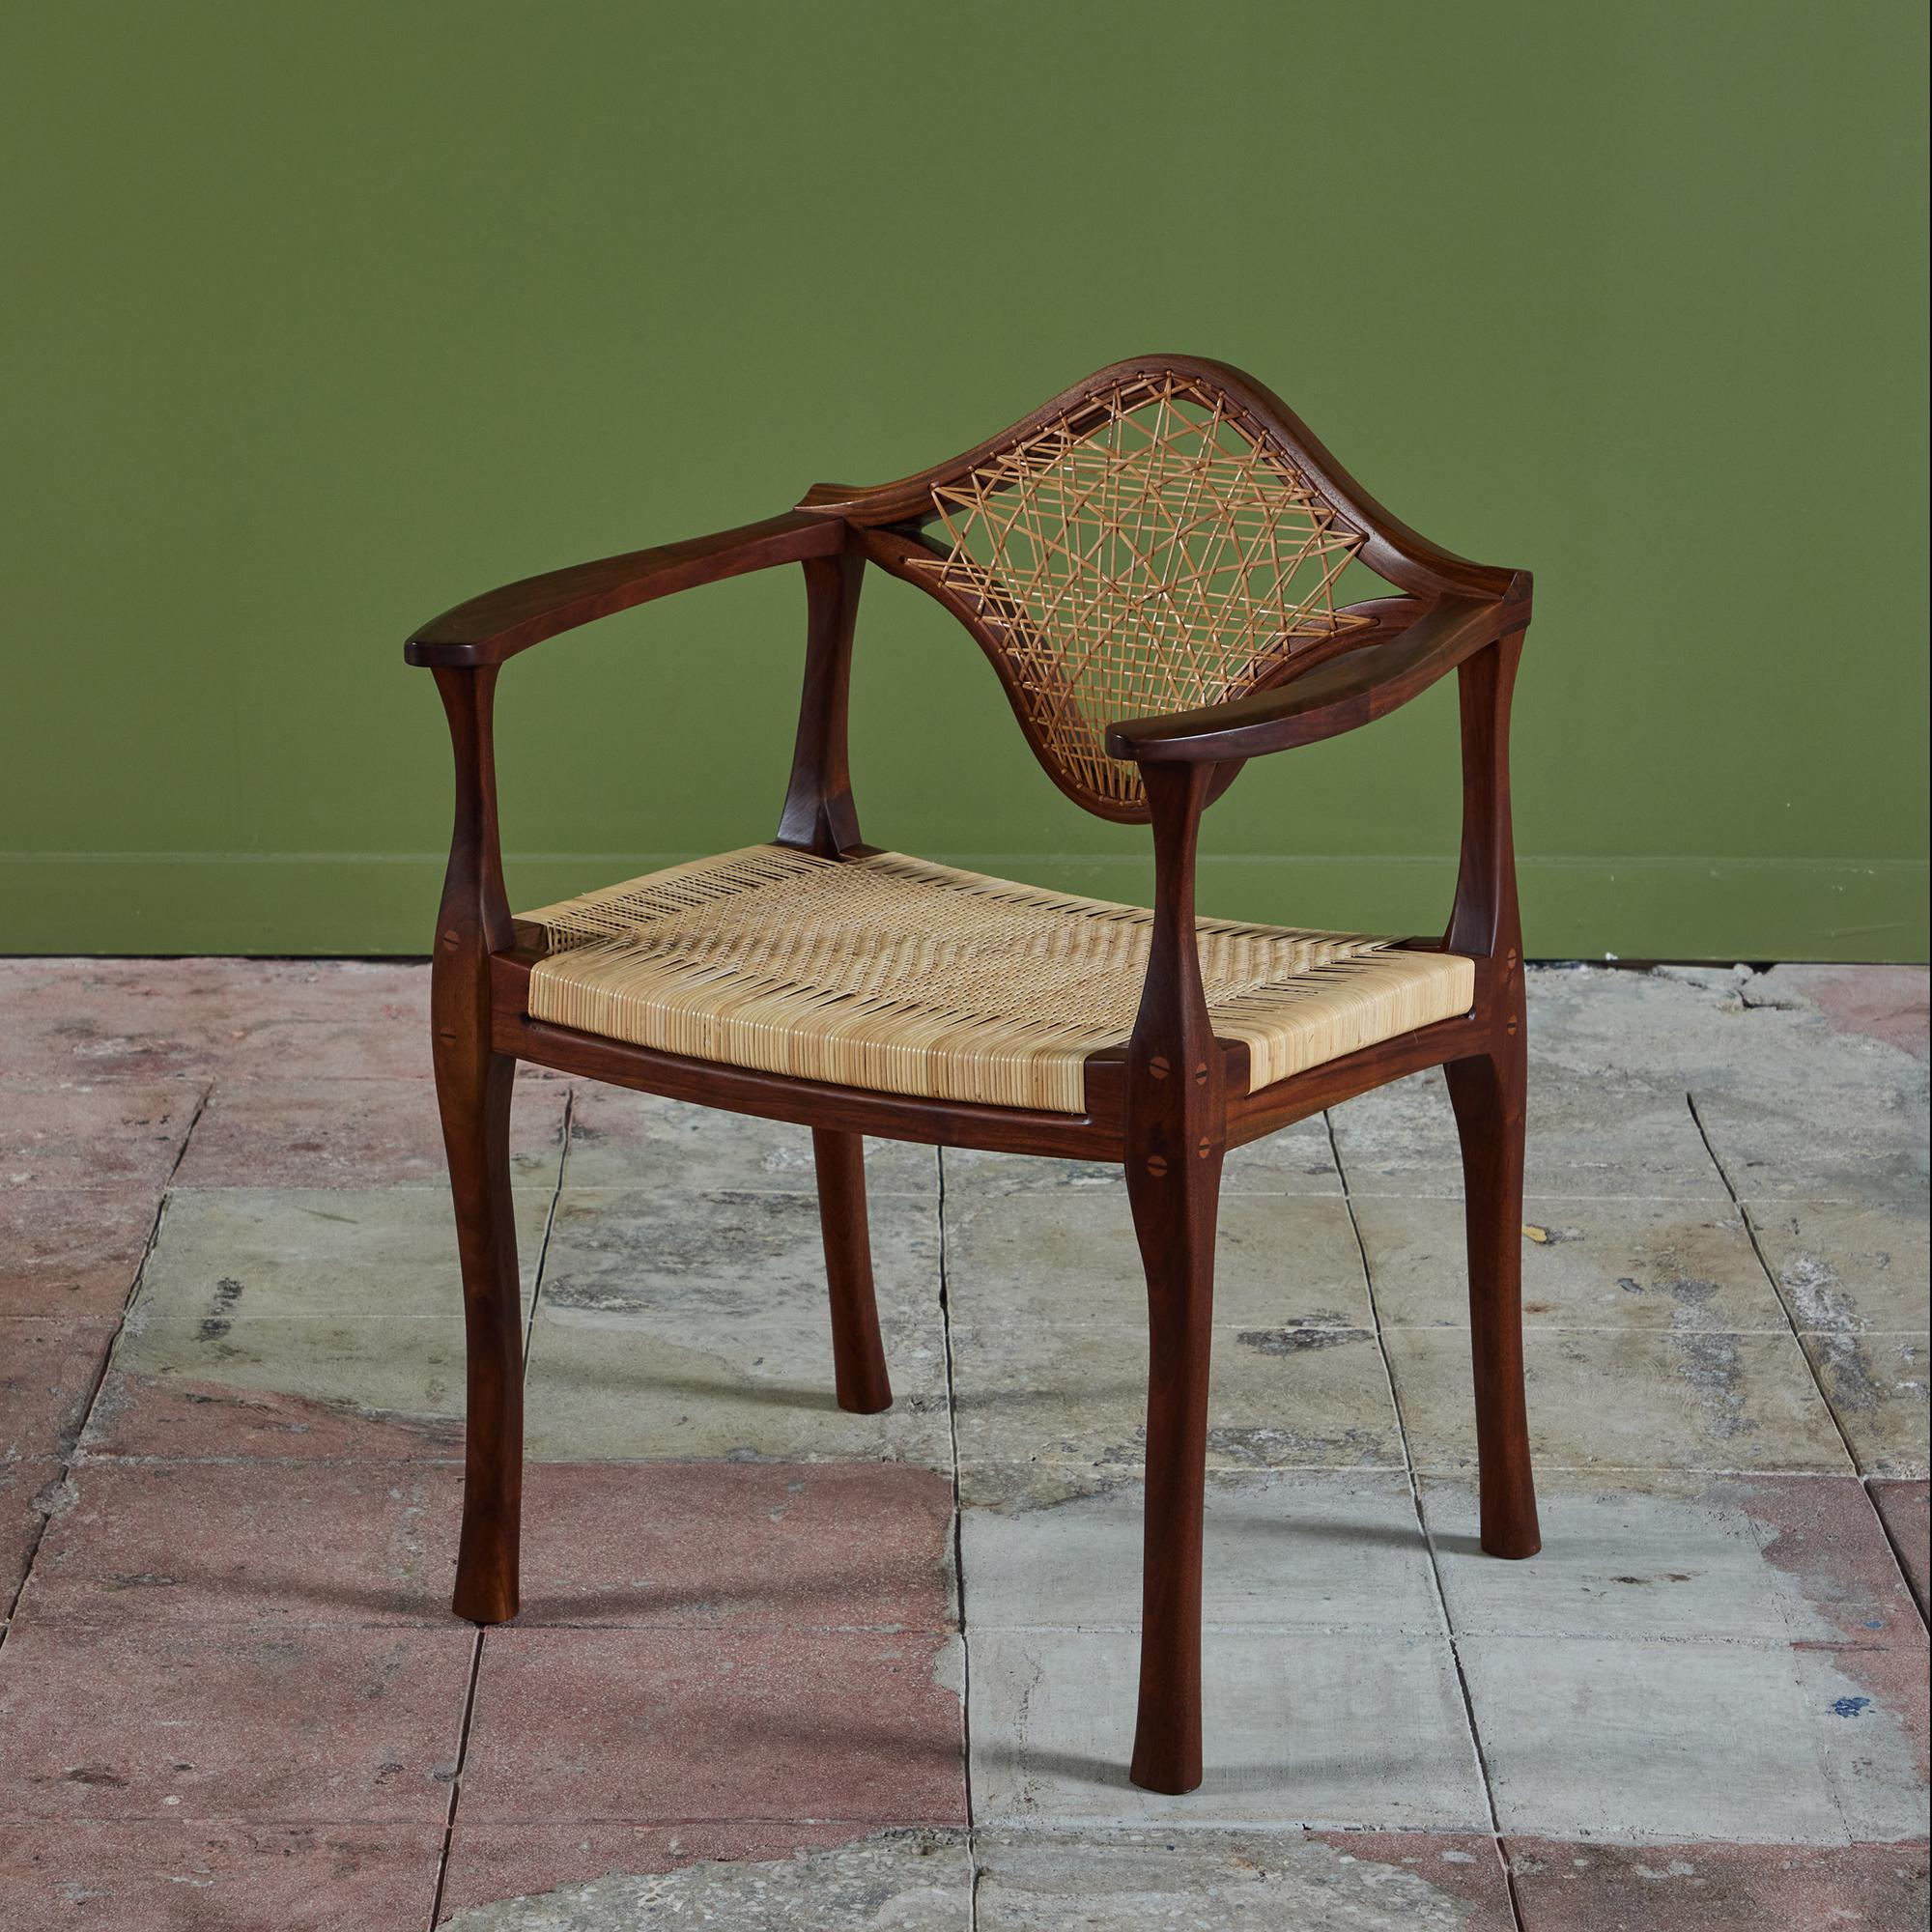 Der Studio Craft Armlehnstuhl aus Nussbaumholz von 1983 ist ein echtes Unikat. Der Stuhl verfügt über einen skulpturalen Holzrahmen mit weichen Kurven und kaskadenförmigen Beinen. Die Rückenlehne weist das ursprüngliche, einzigartig geflochtene Rohr